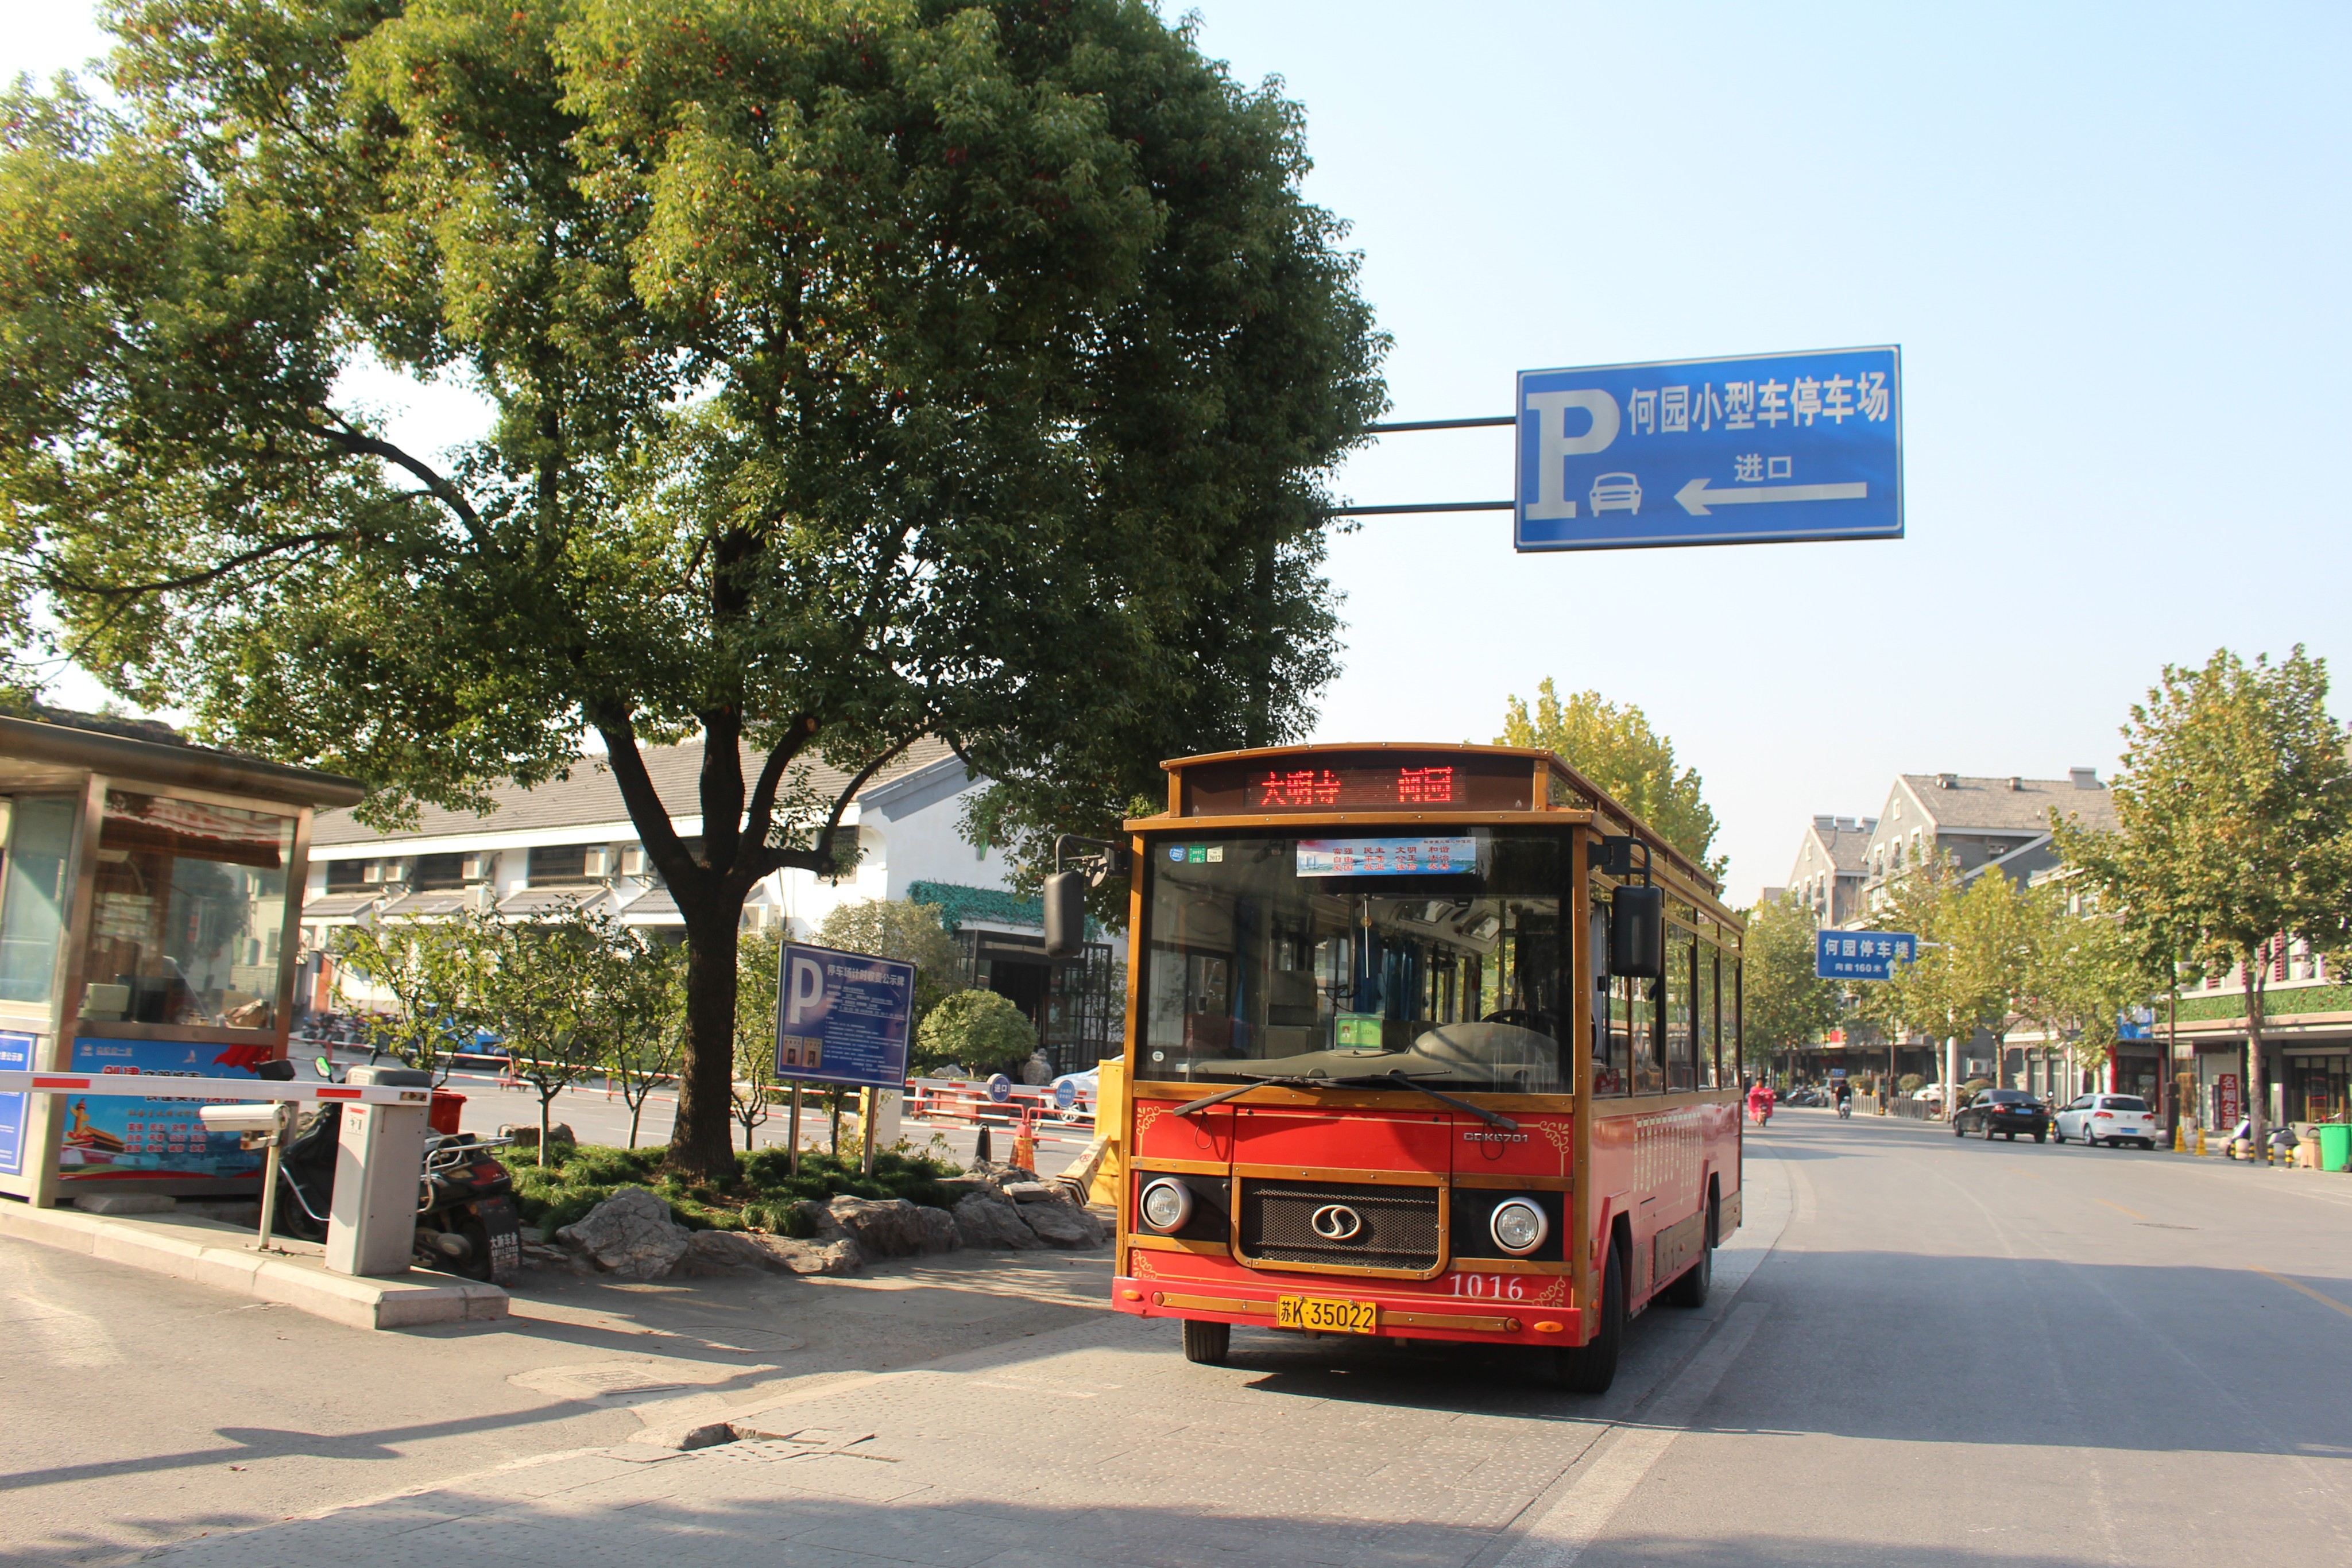 这个旅游巴士把扬州的主要景点串联起来了,东关街有站,建议早上先去瘦